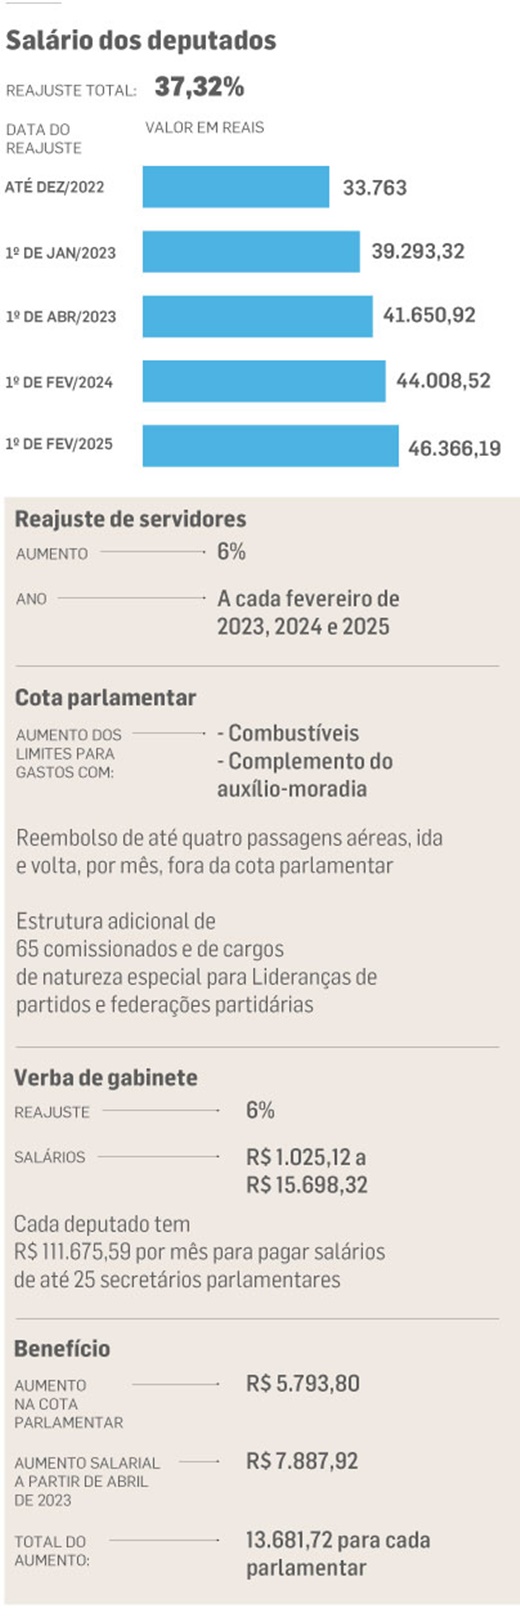 www.seuguara.com.br/reajuste salarial dos deputados/